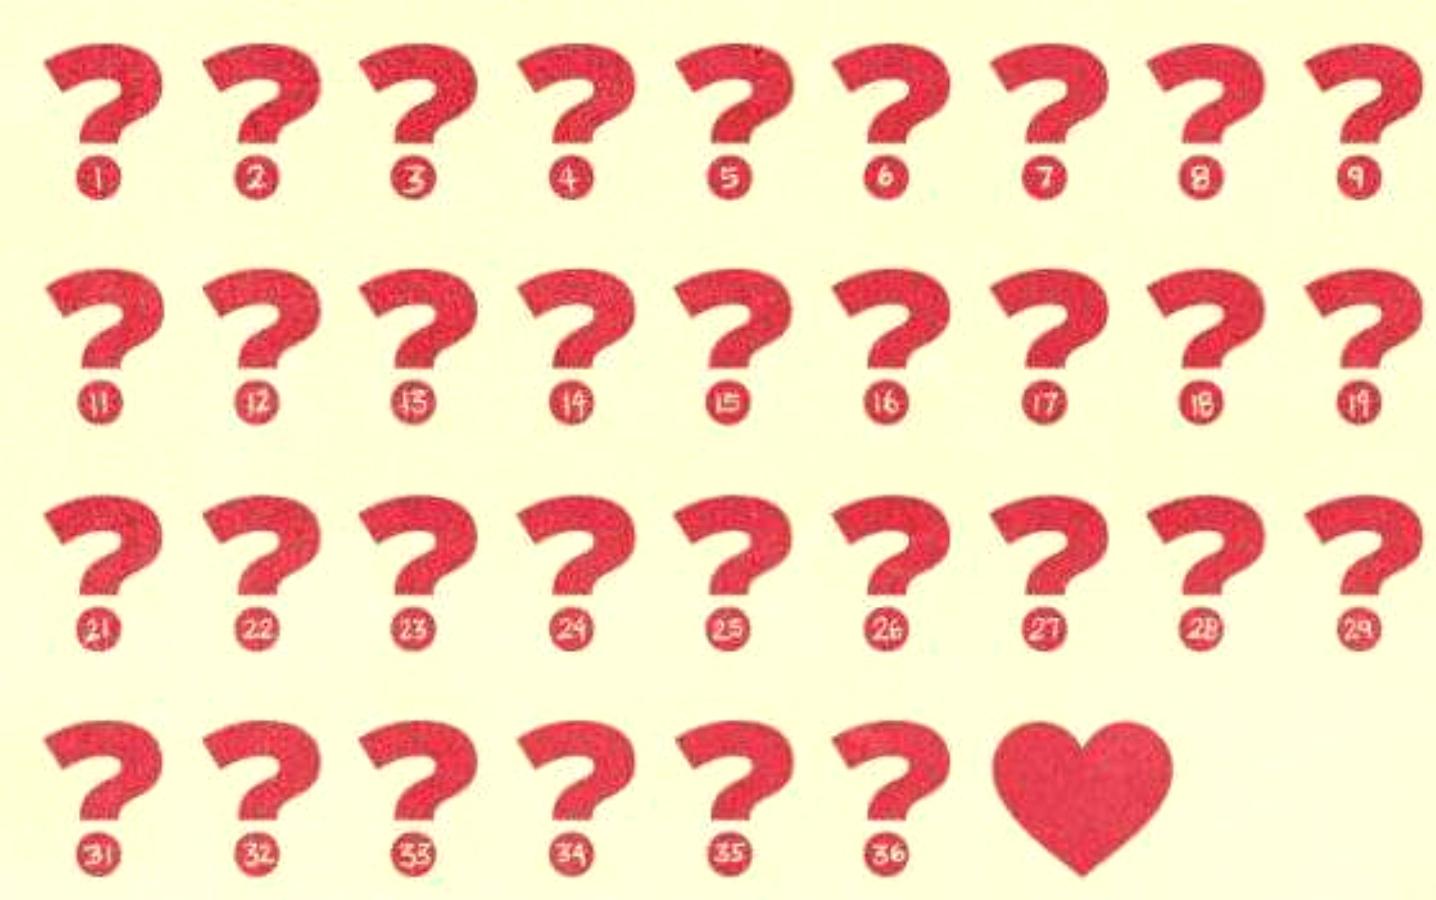 The love game: Το ψυχολογικό τεστ που θα σε οδηγήσει στο άλλο σου μισό